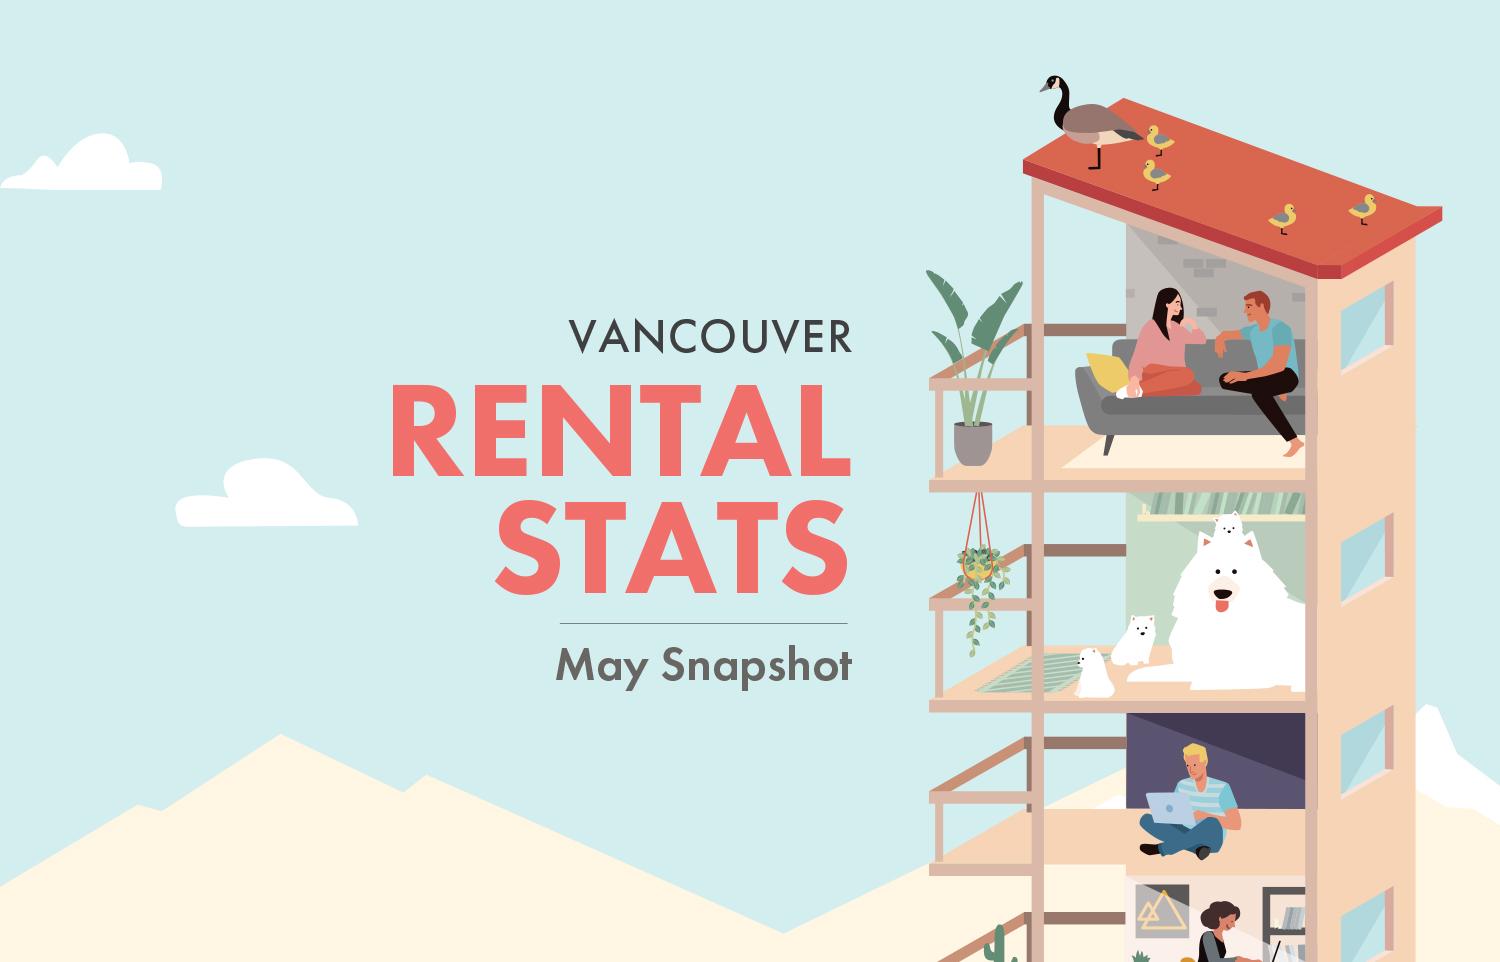 Vancouver Rental Stats – May 2019 Snapshot